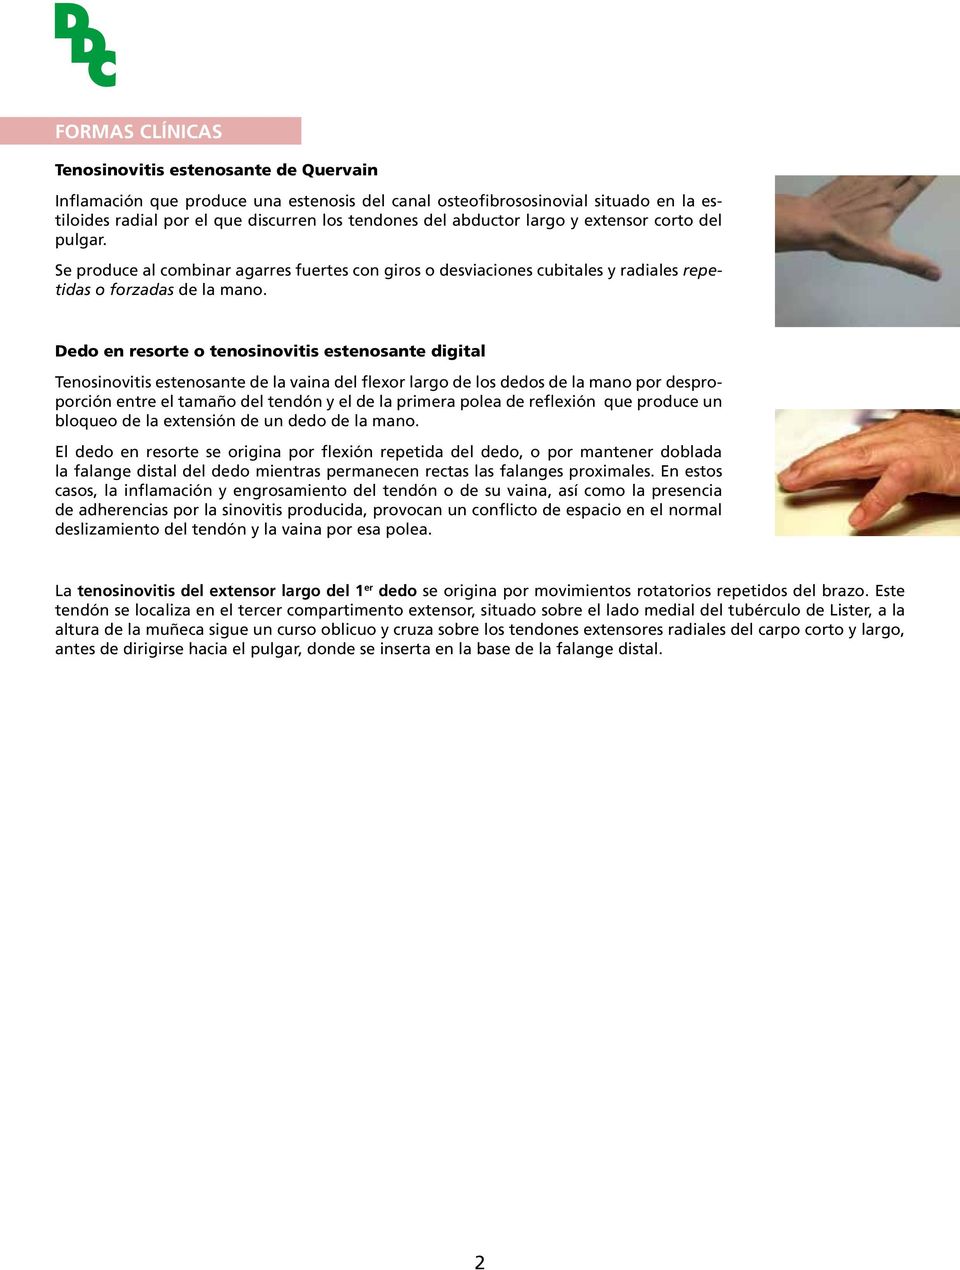 Dedo en resorte o tenosinovitis estenosante digital Tenosinovitis estenosante de la vaina del flexor largo de los dedos de la mano por desproporción entre el tamaño del tendón y el de la primera